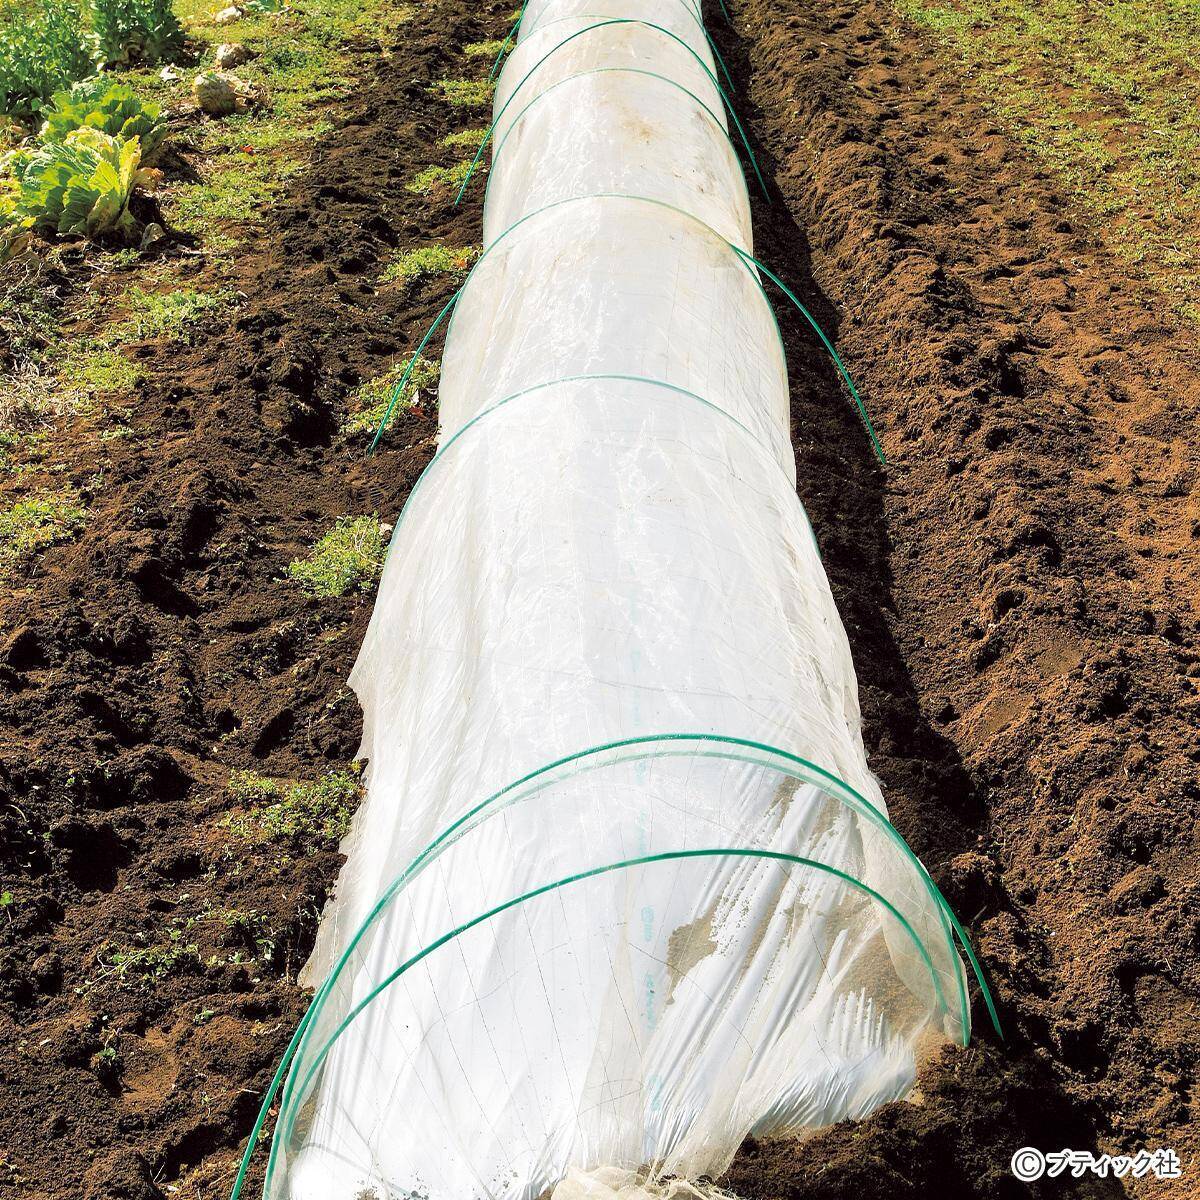 畑の虫対策 防虫トンネルの効果的な利用方法 について 21年4月26日 エキサイトニュース